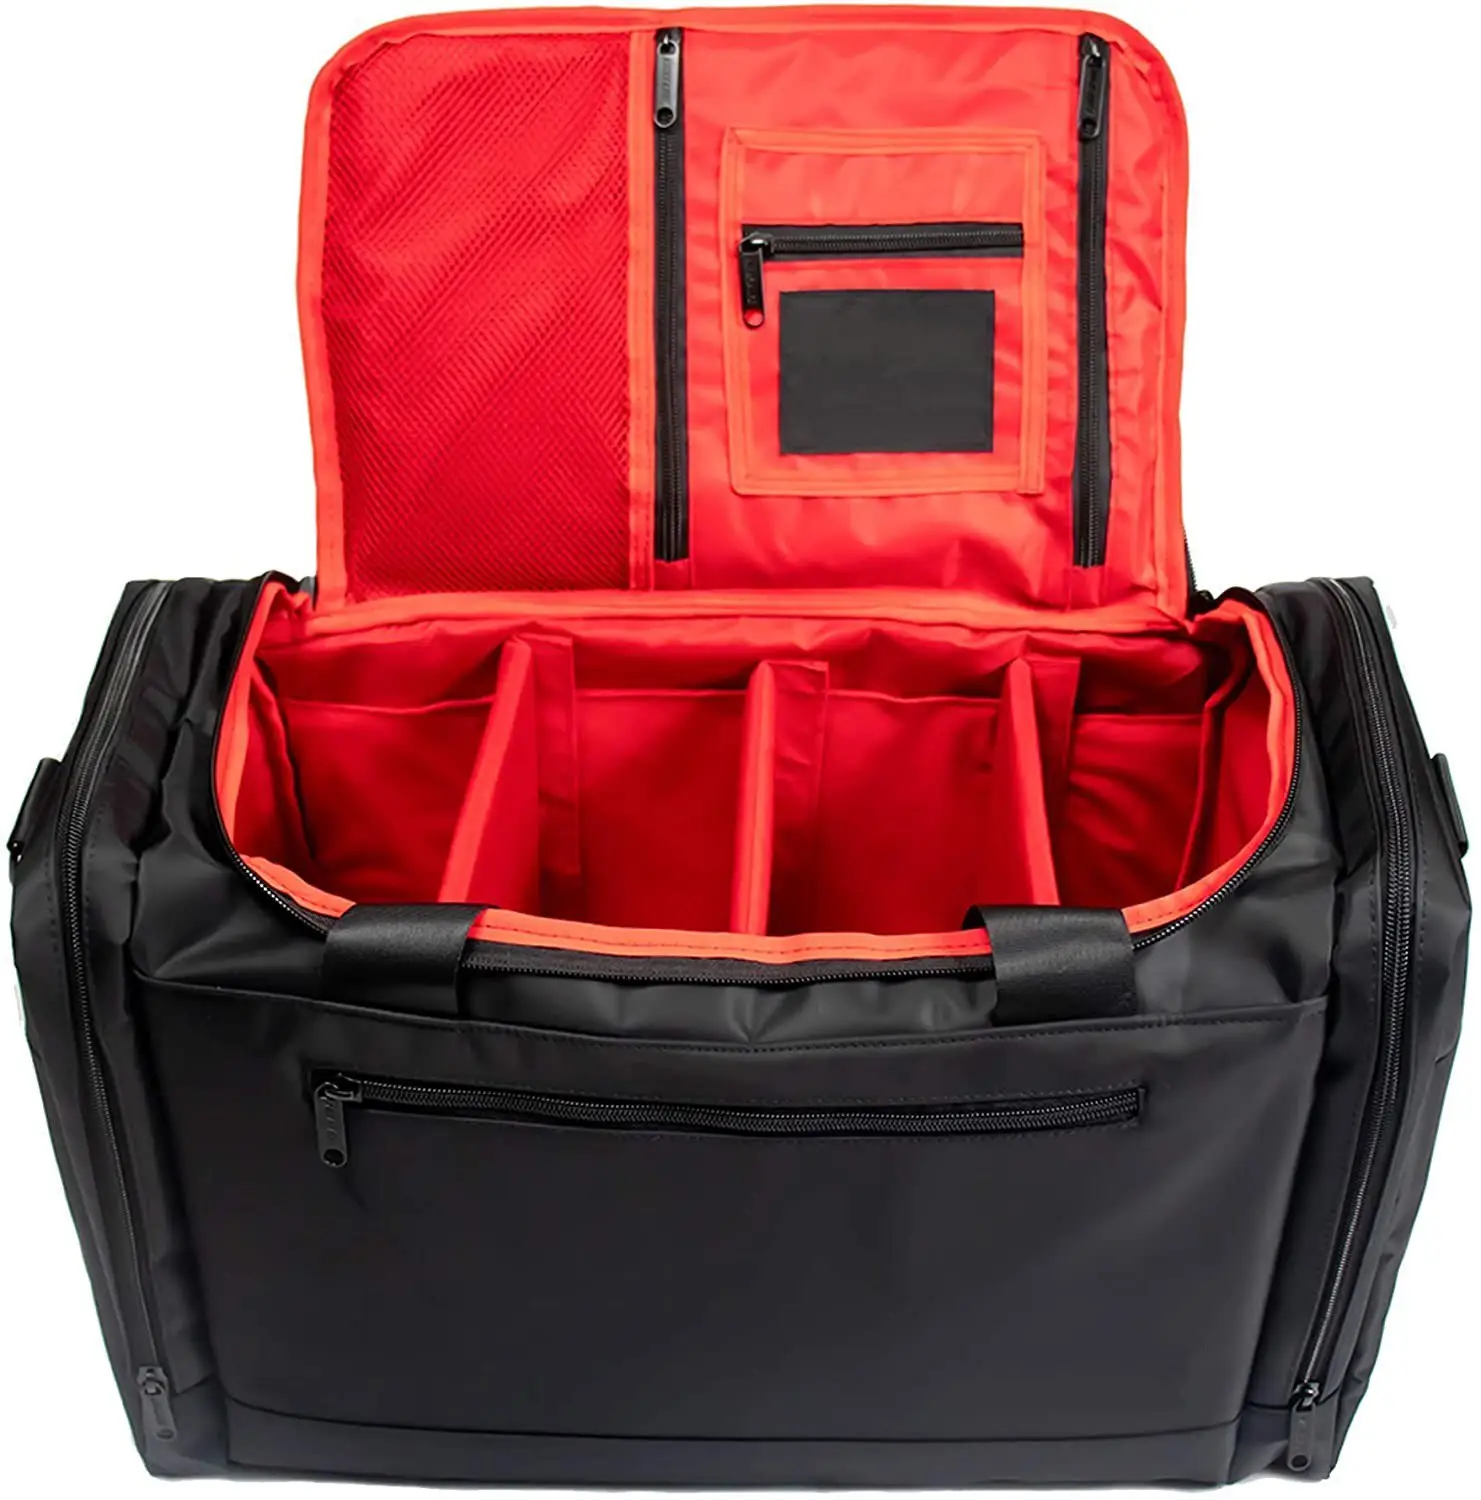 Sacola de tênis premium amostra grátis, bolsa de viagem duffel-3 compartimentos ajustáveis-para sapatos, roupas e academia